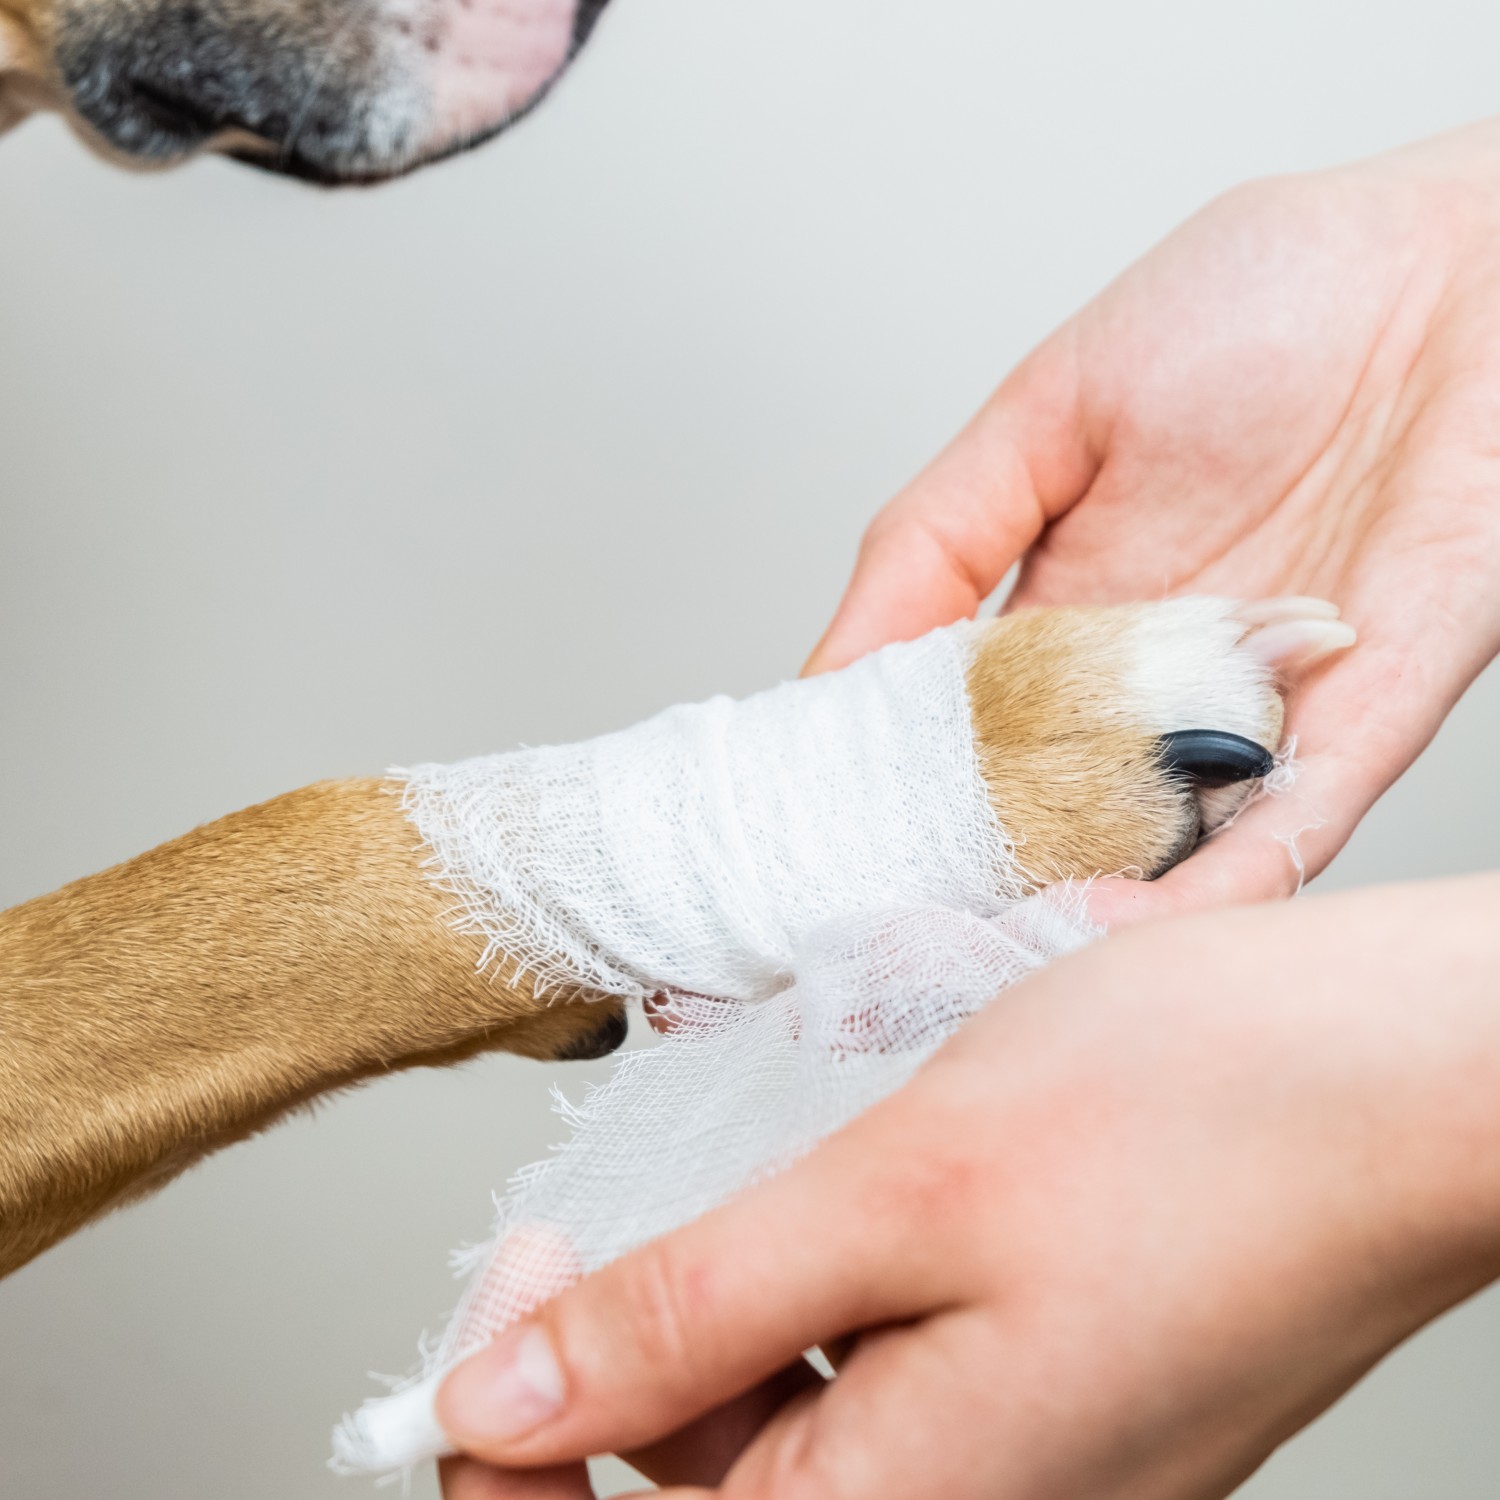 Dog Getting Its Paw Bandaged